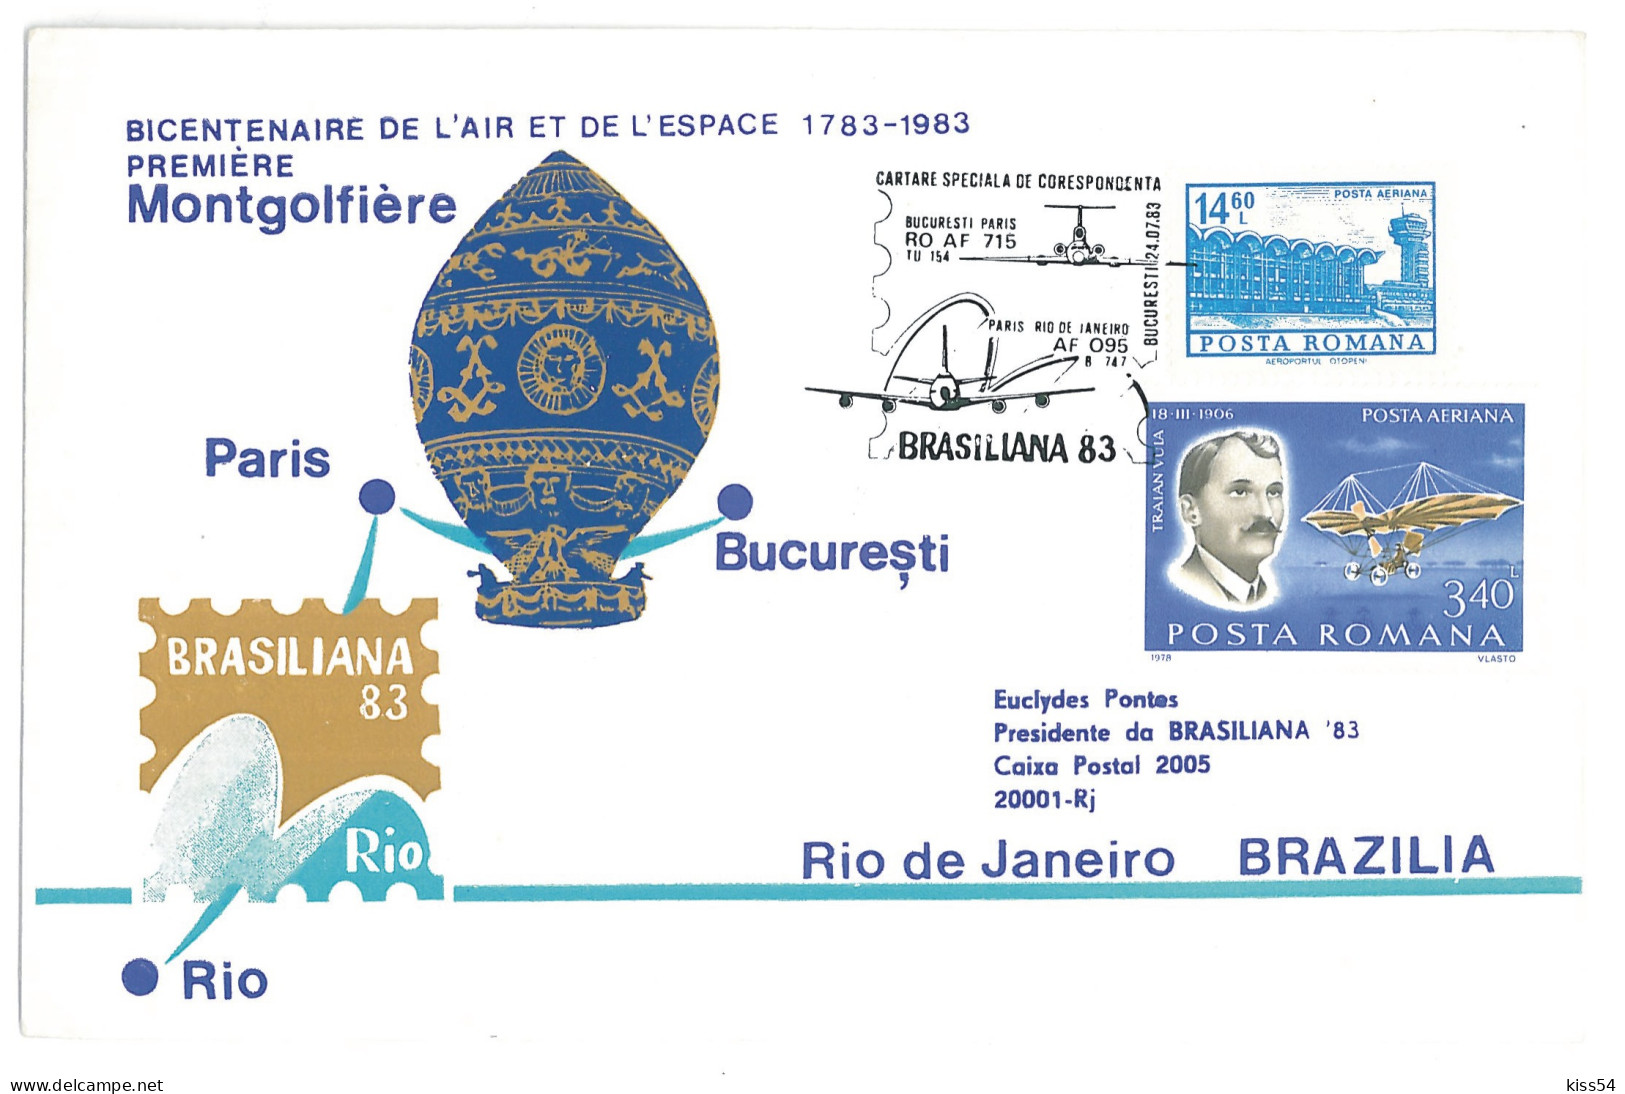 COV 24 - 266-a AIRPLANE, Flight BUCURESTI, PARIS, RIO De JANEIRO - Cover - Used - 1983 - Storia Postale